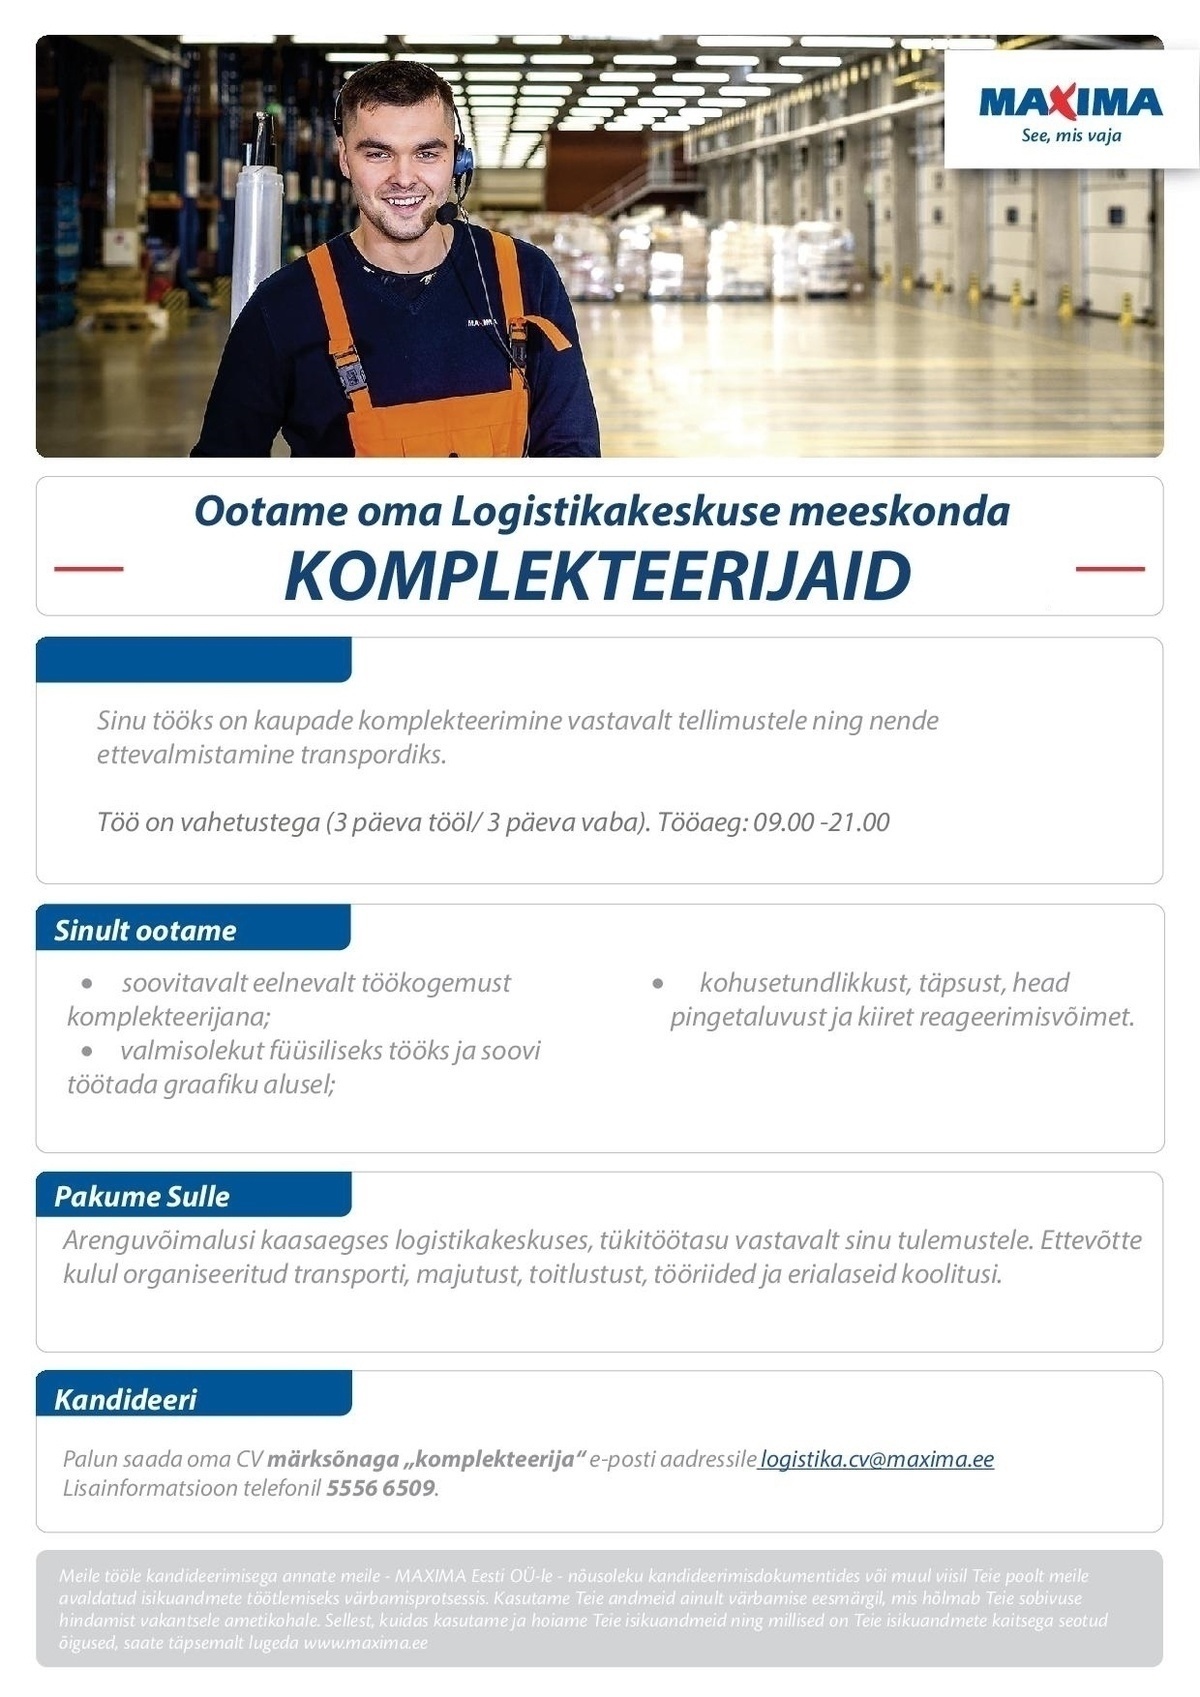 Maxima Eesti OÜ Komplekteerijad Maxima Logistikakeskuses